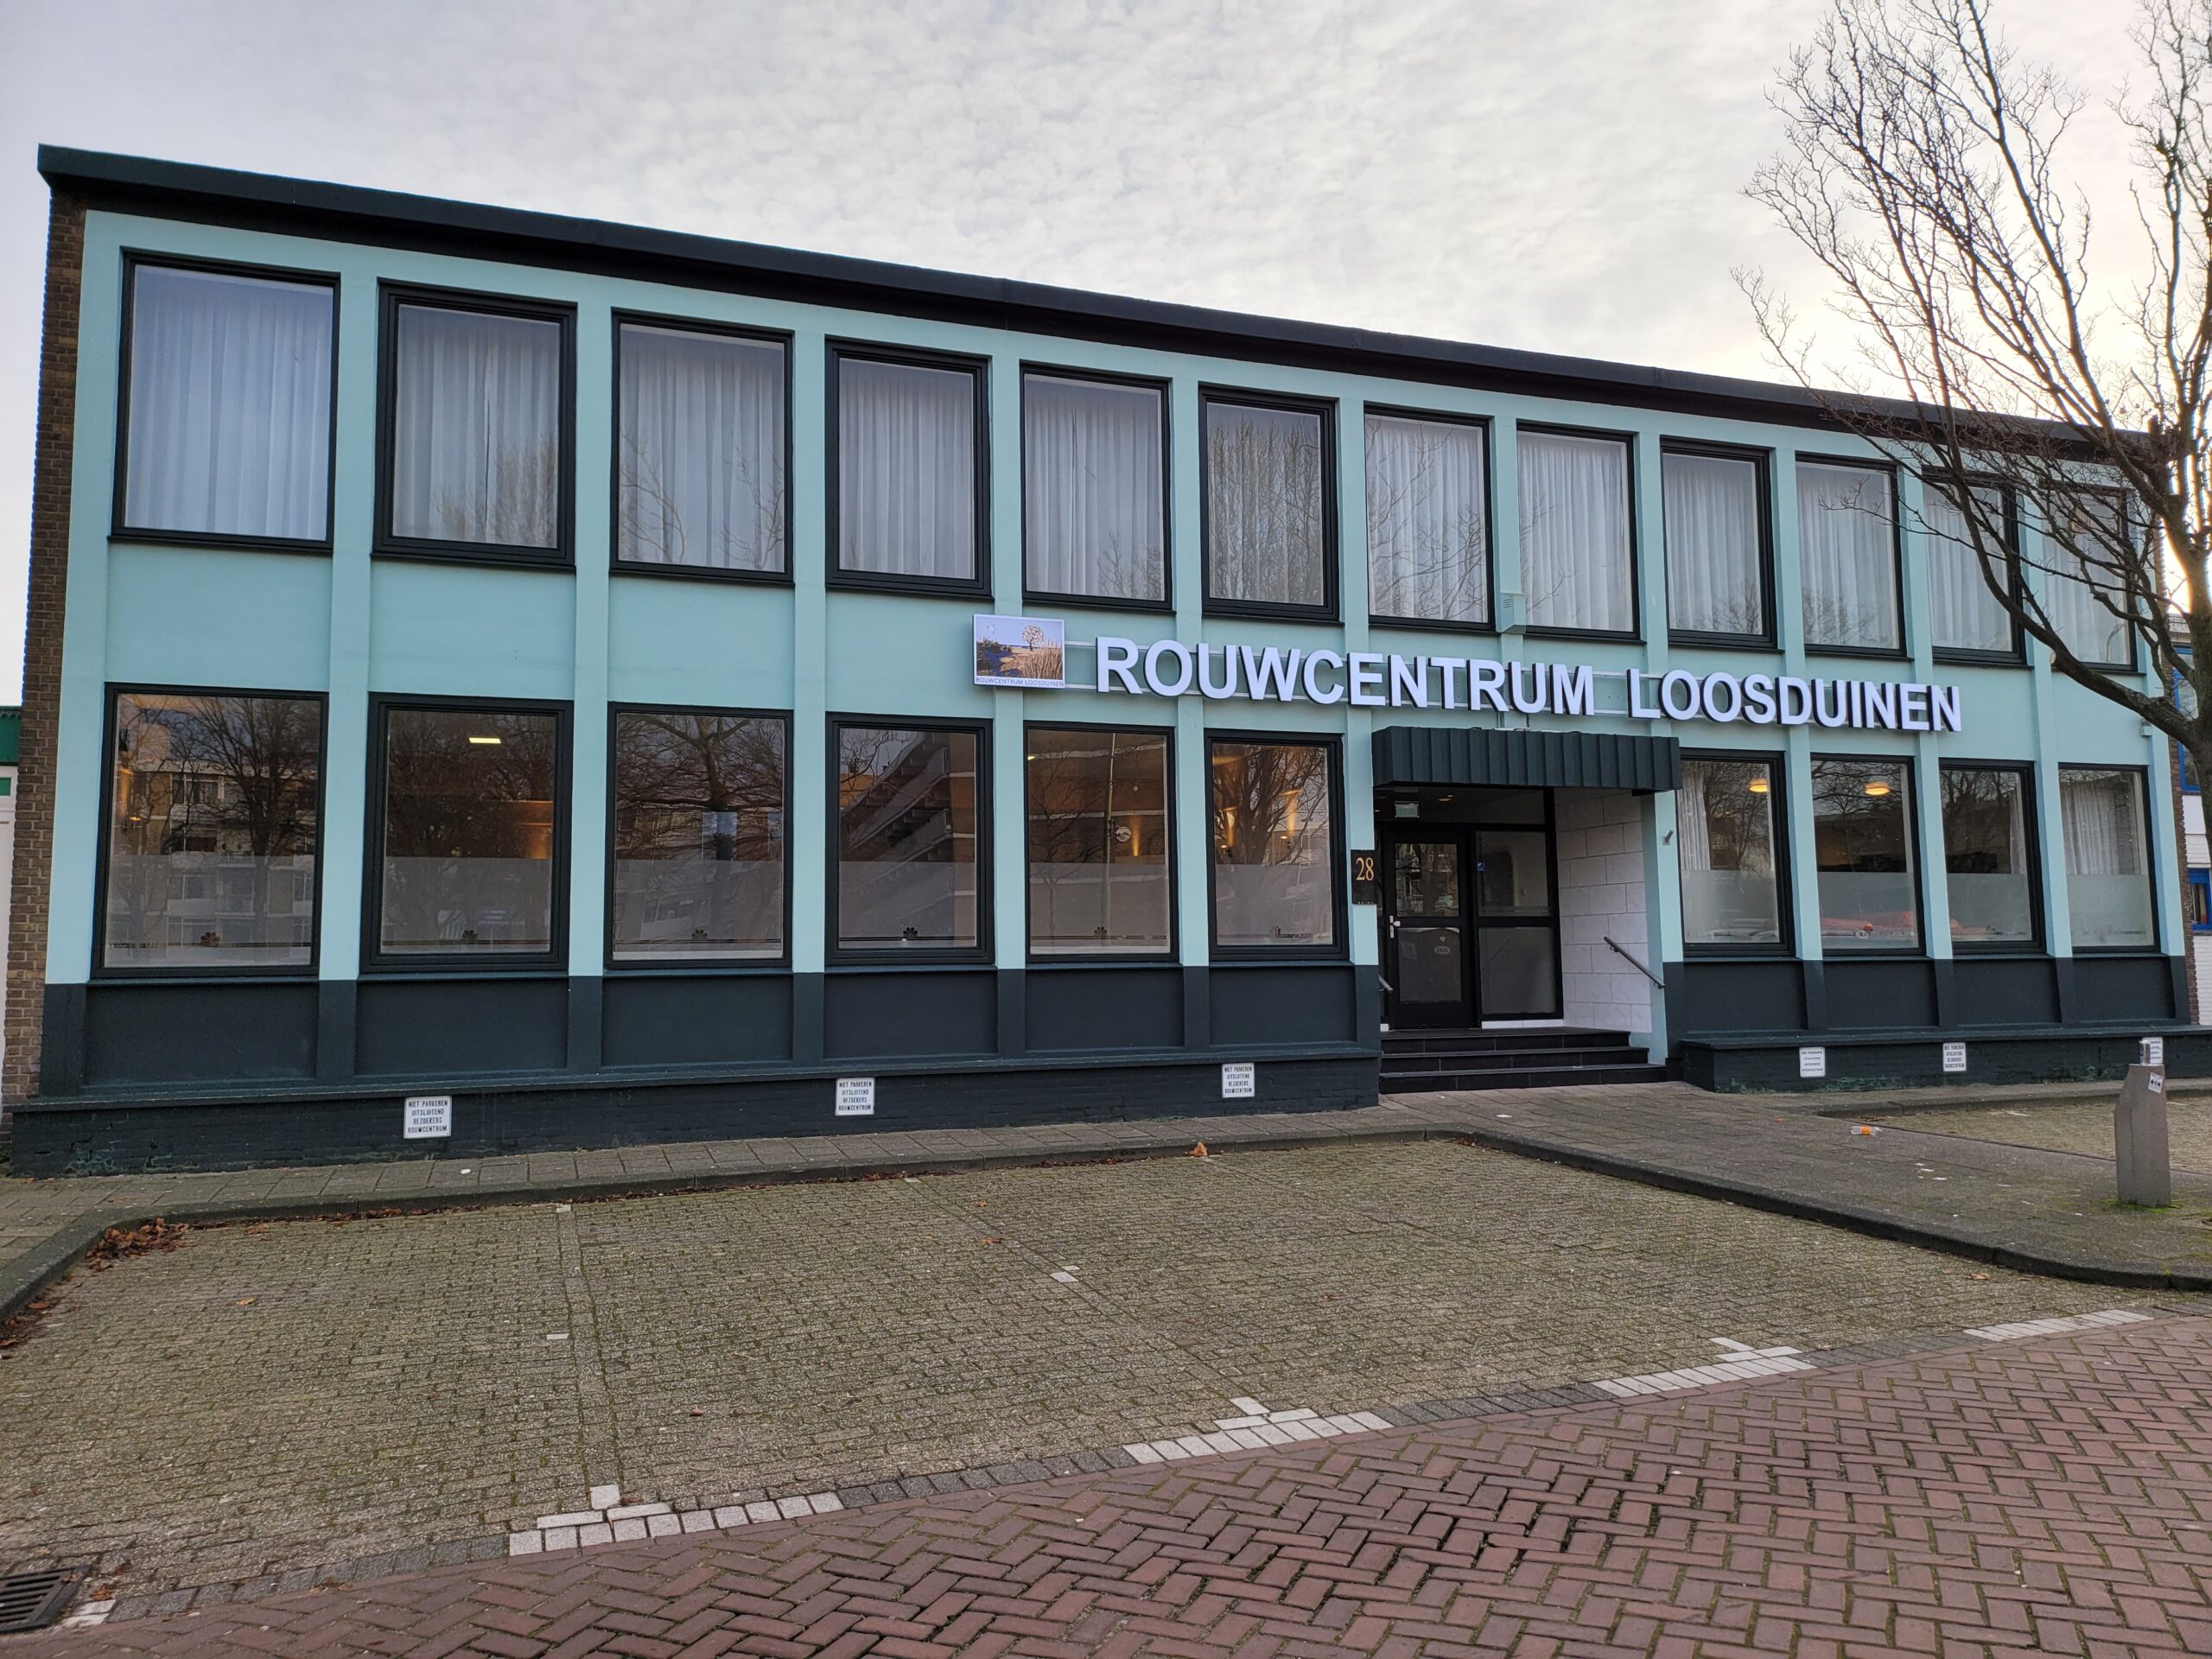 Rouwcentrum Loosduinen – Den Haag